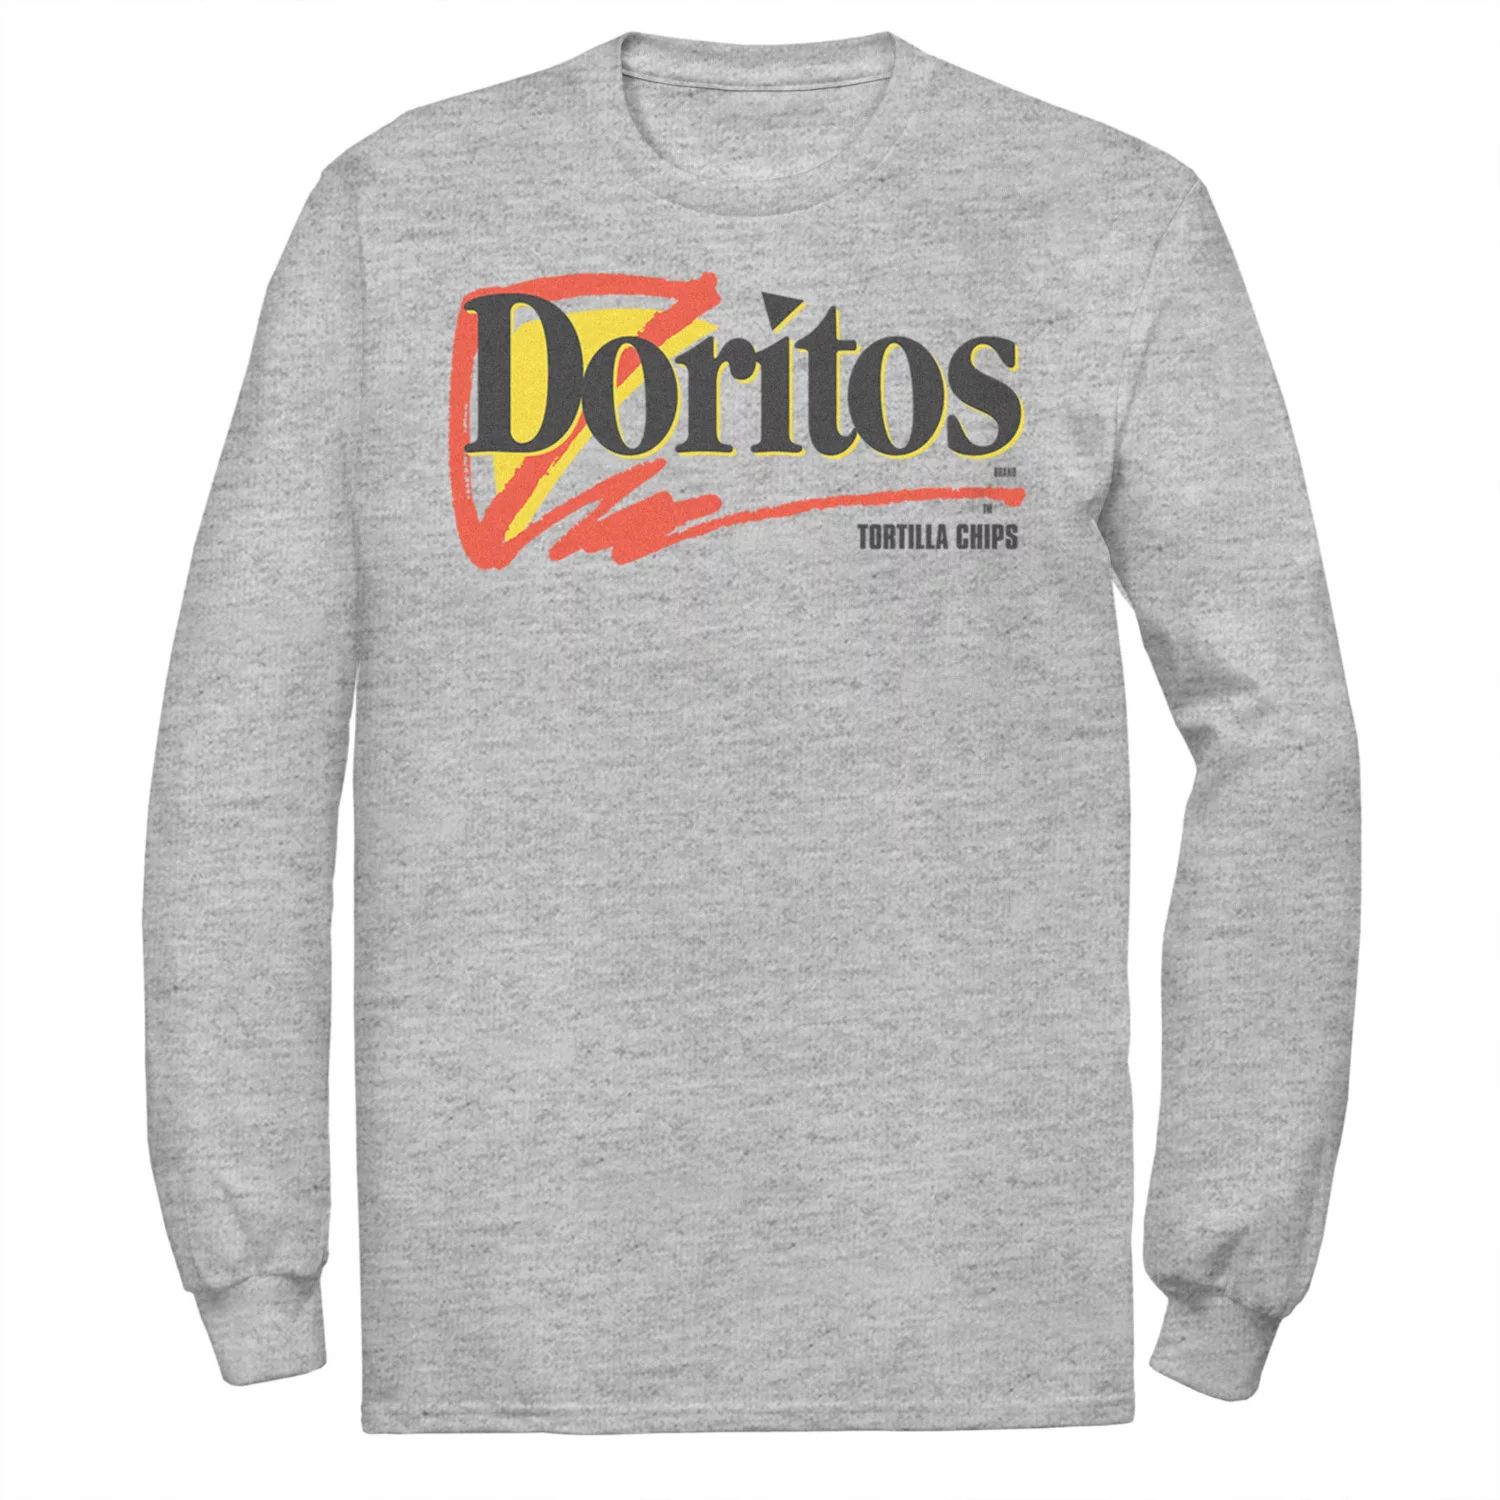 Мужская футболка с логотипом Doritos Tortilla Chips Licensed Character мужская футболка doritos tortilla chips flavors licensed character